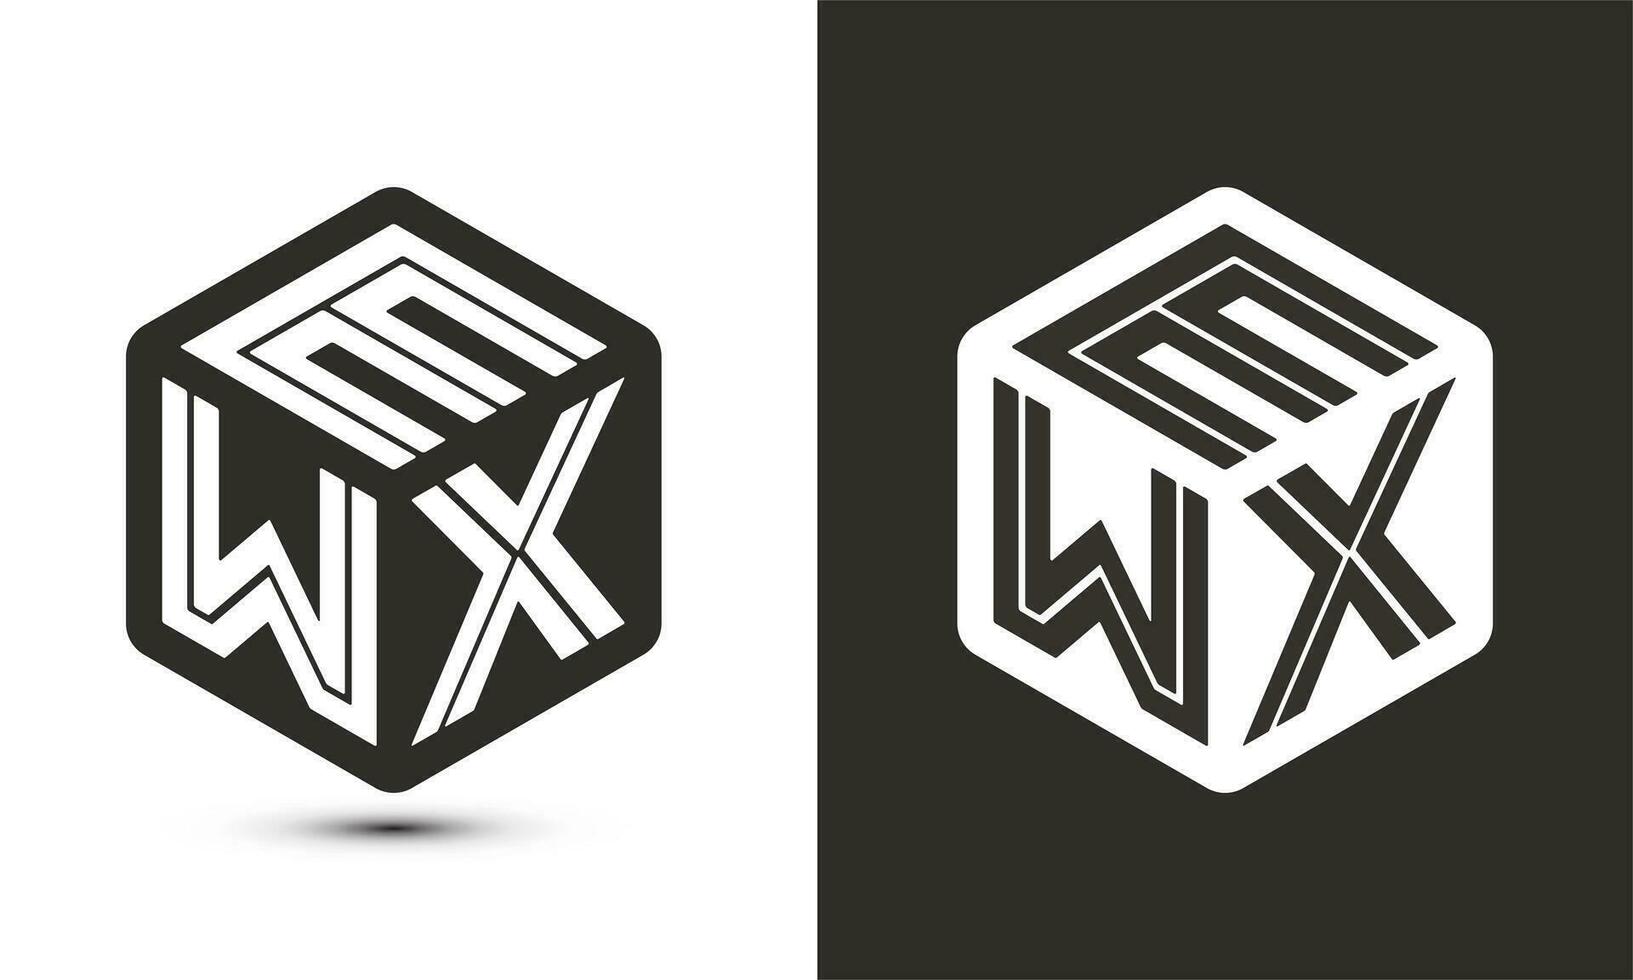 ewx brief logo ontwerp met illustrator kubus logo, vector logo modern alfabet doopvont overlappen stijl.